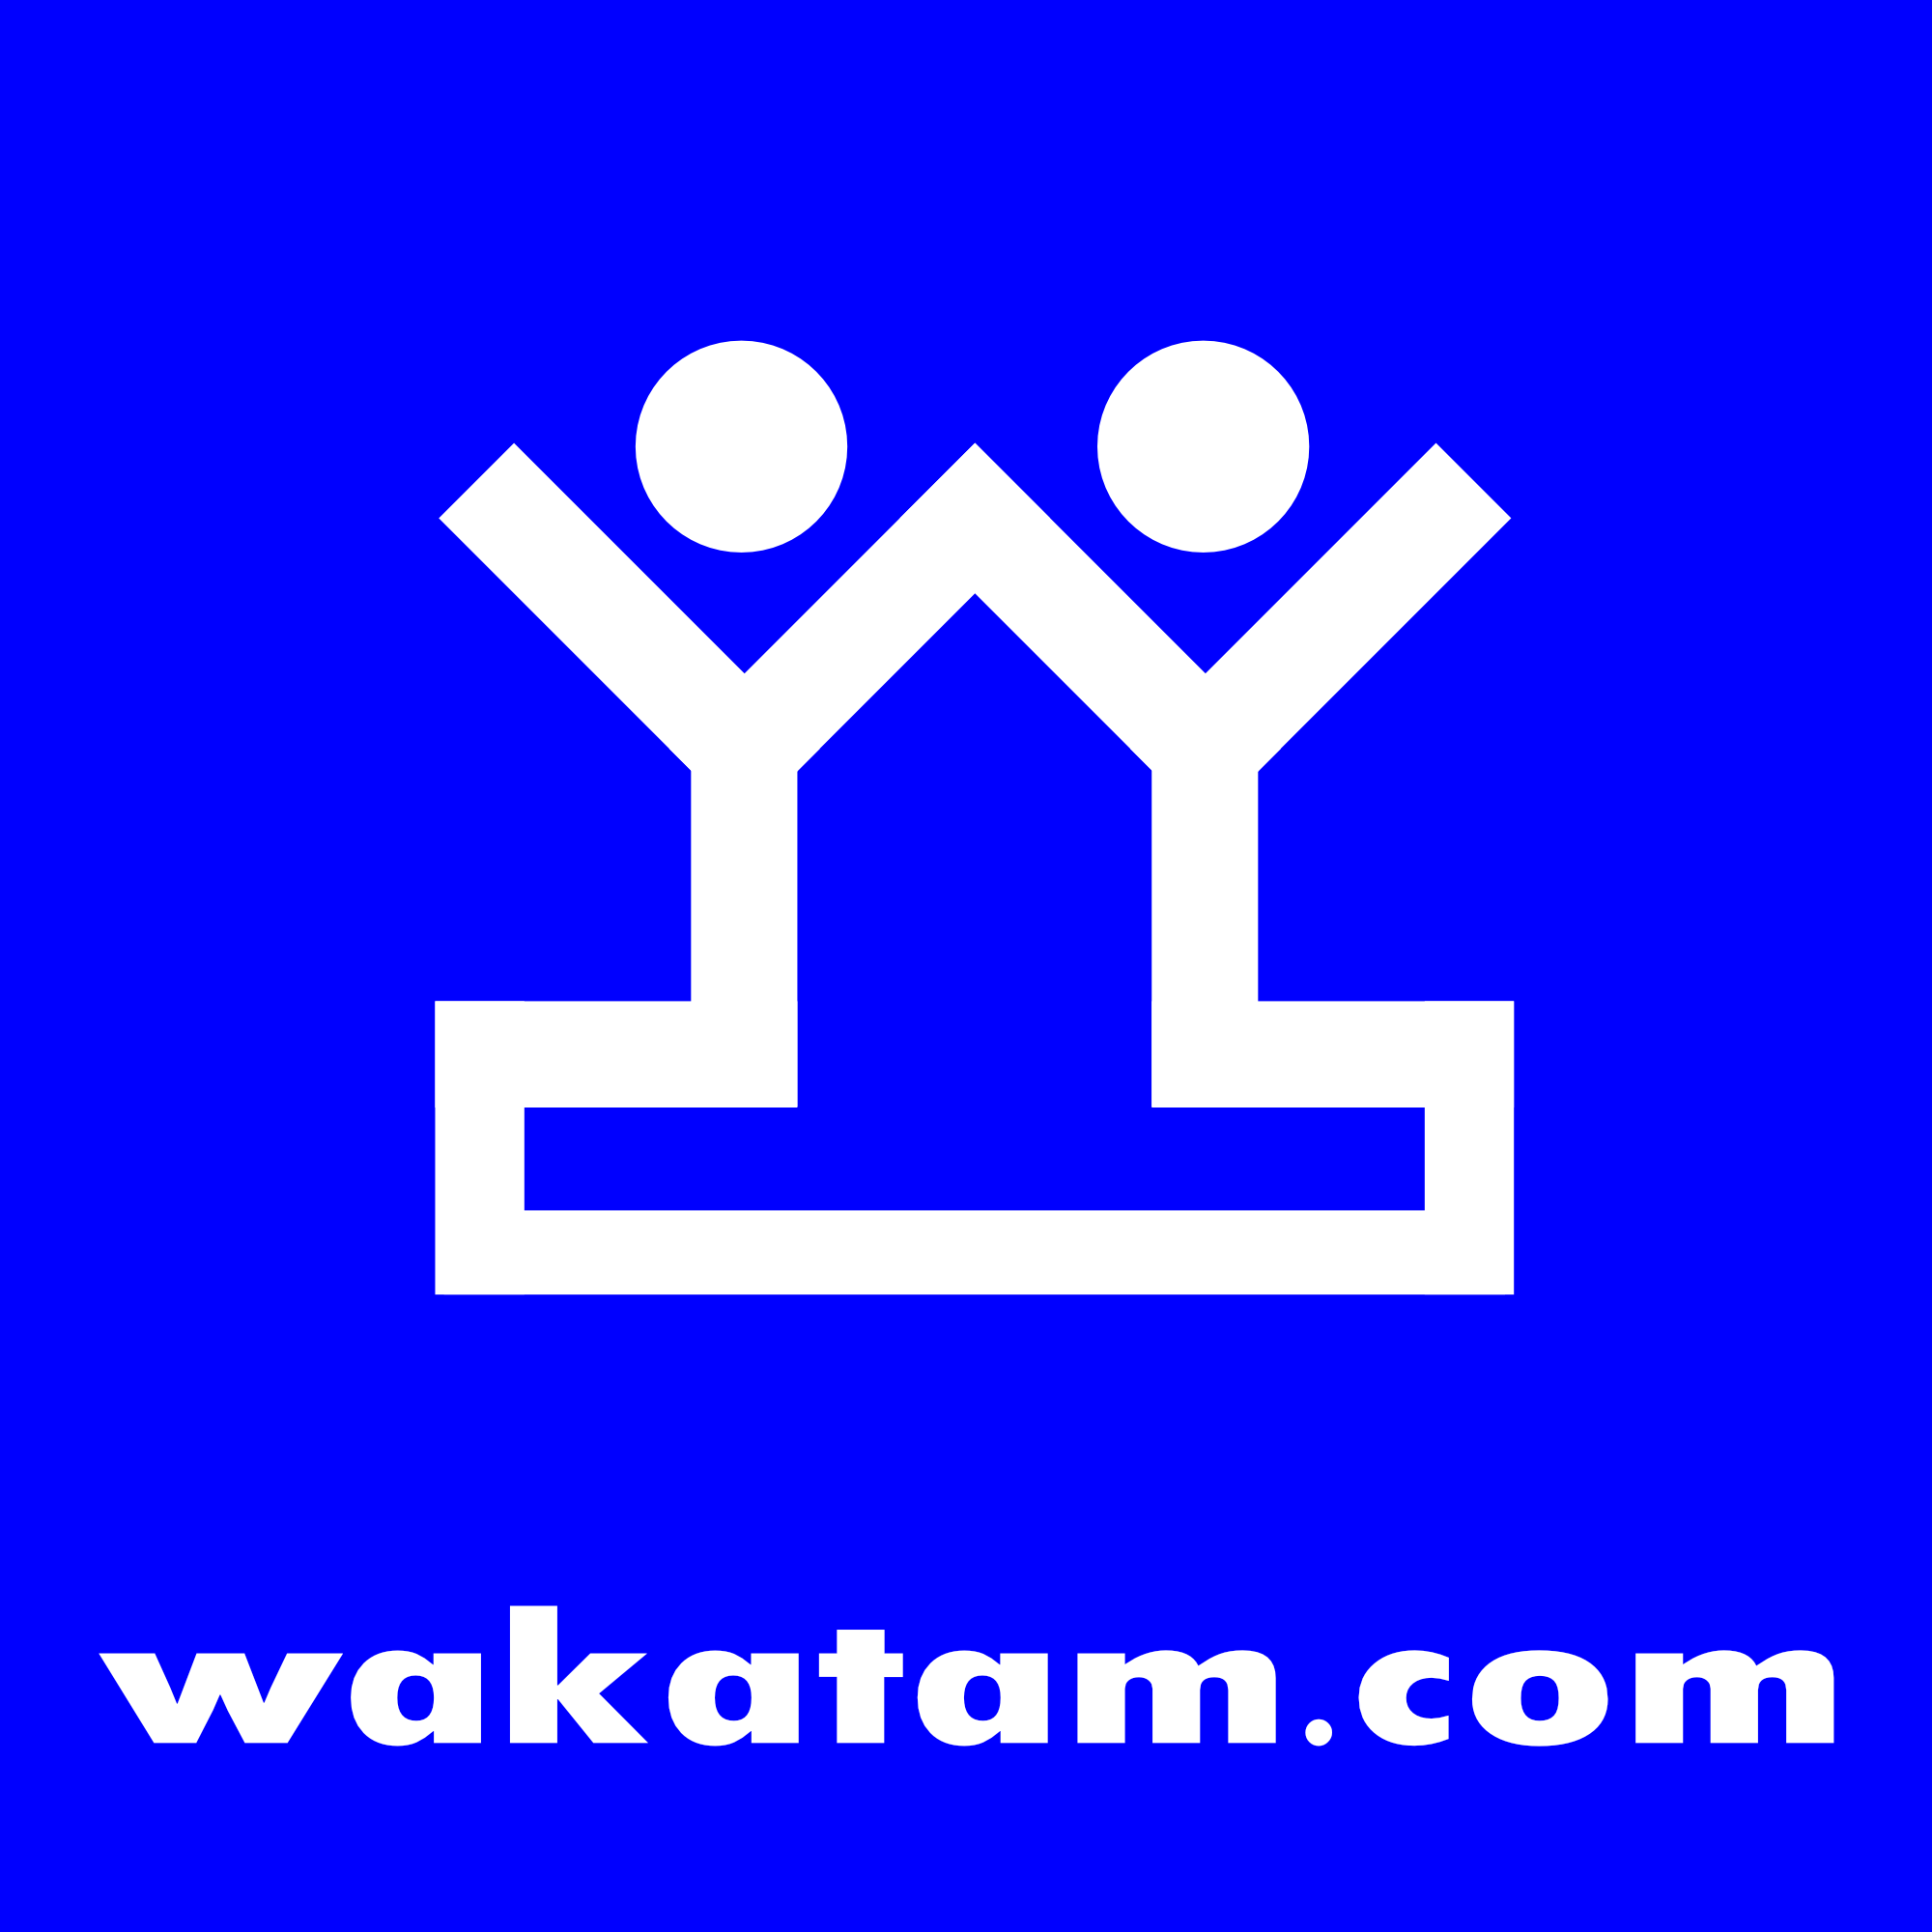 wakatam.com | 株式会社わかたむ |